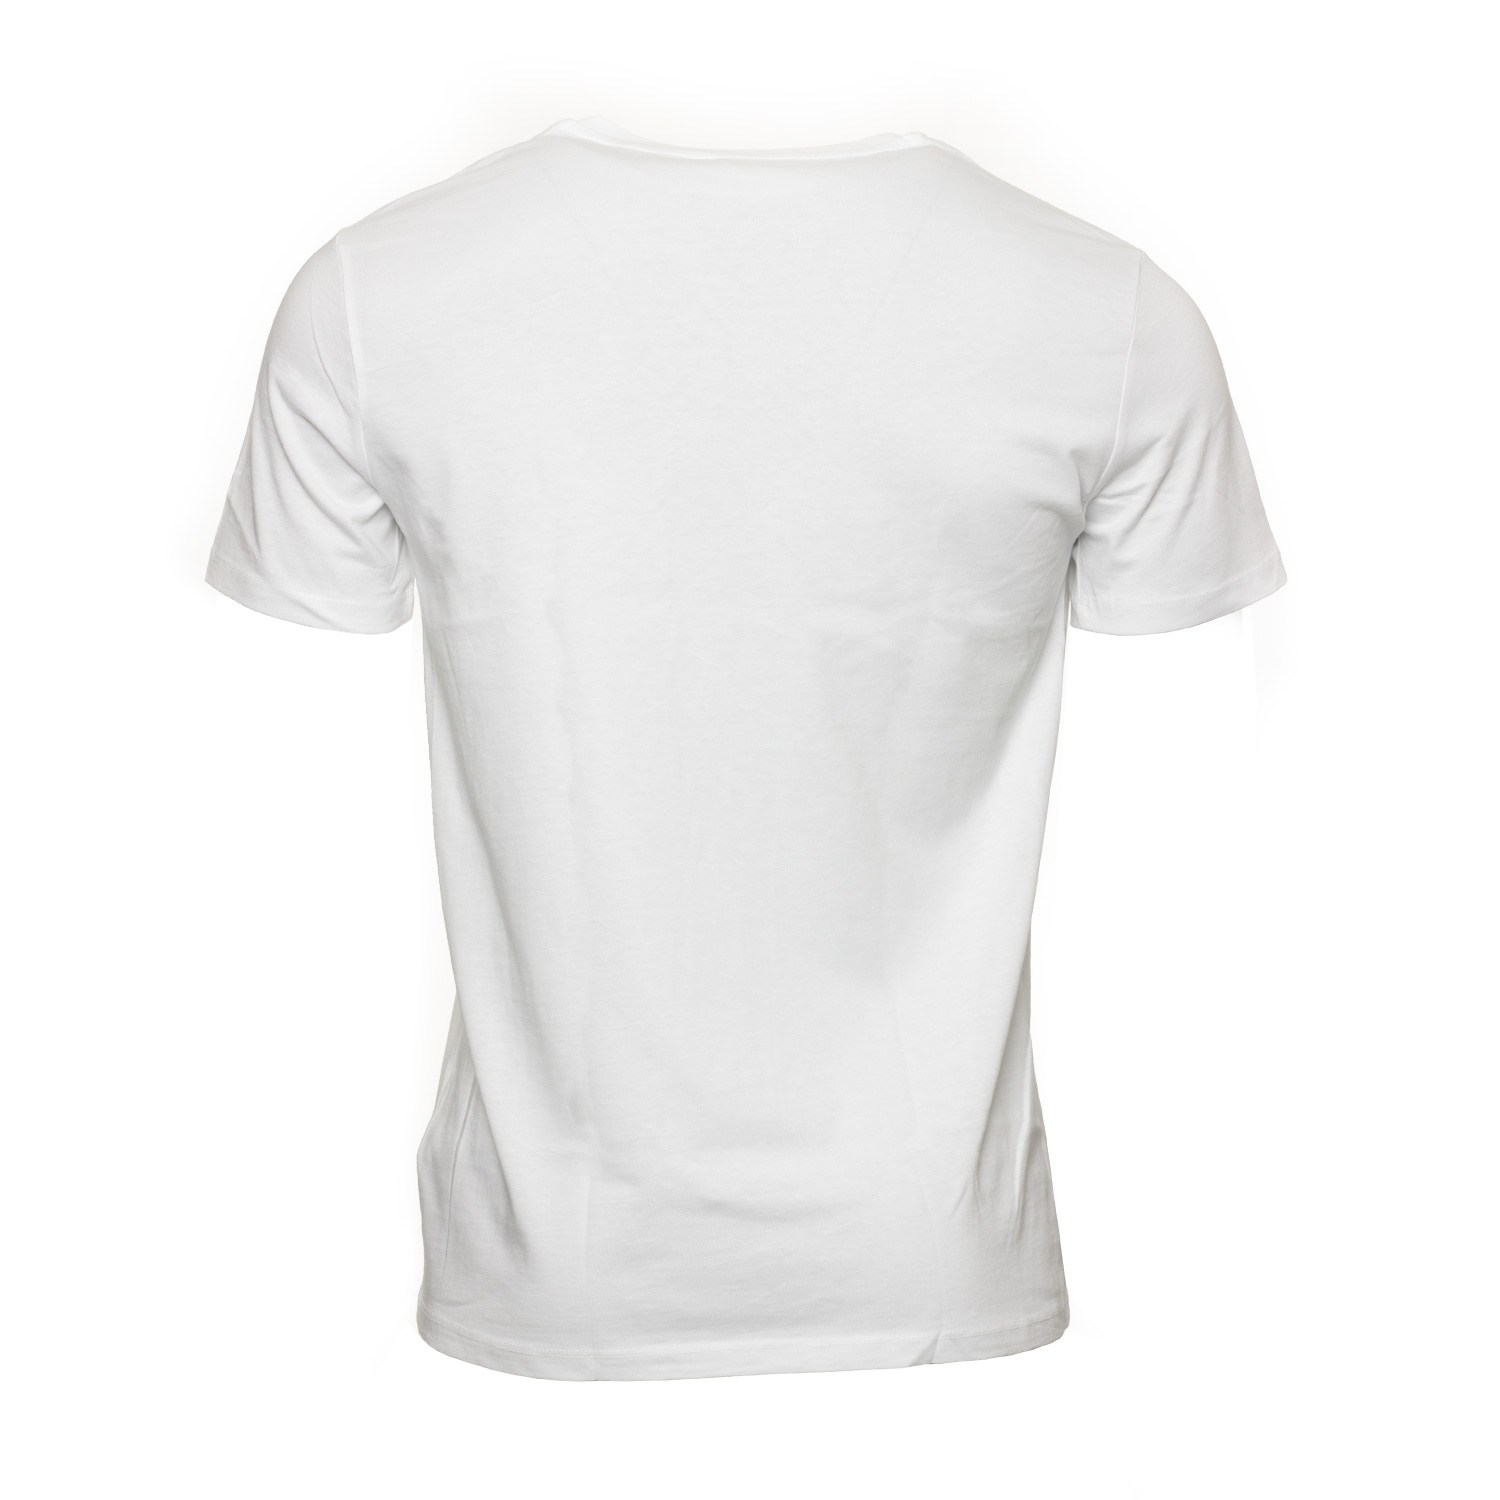 Radeberger T-Shirt Retro, Unisex, weiß, Gr. S